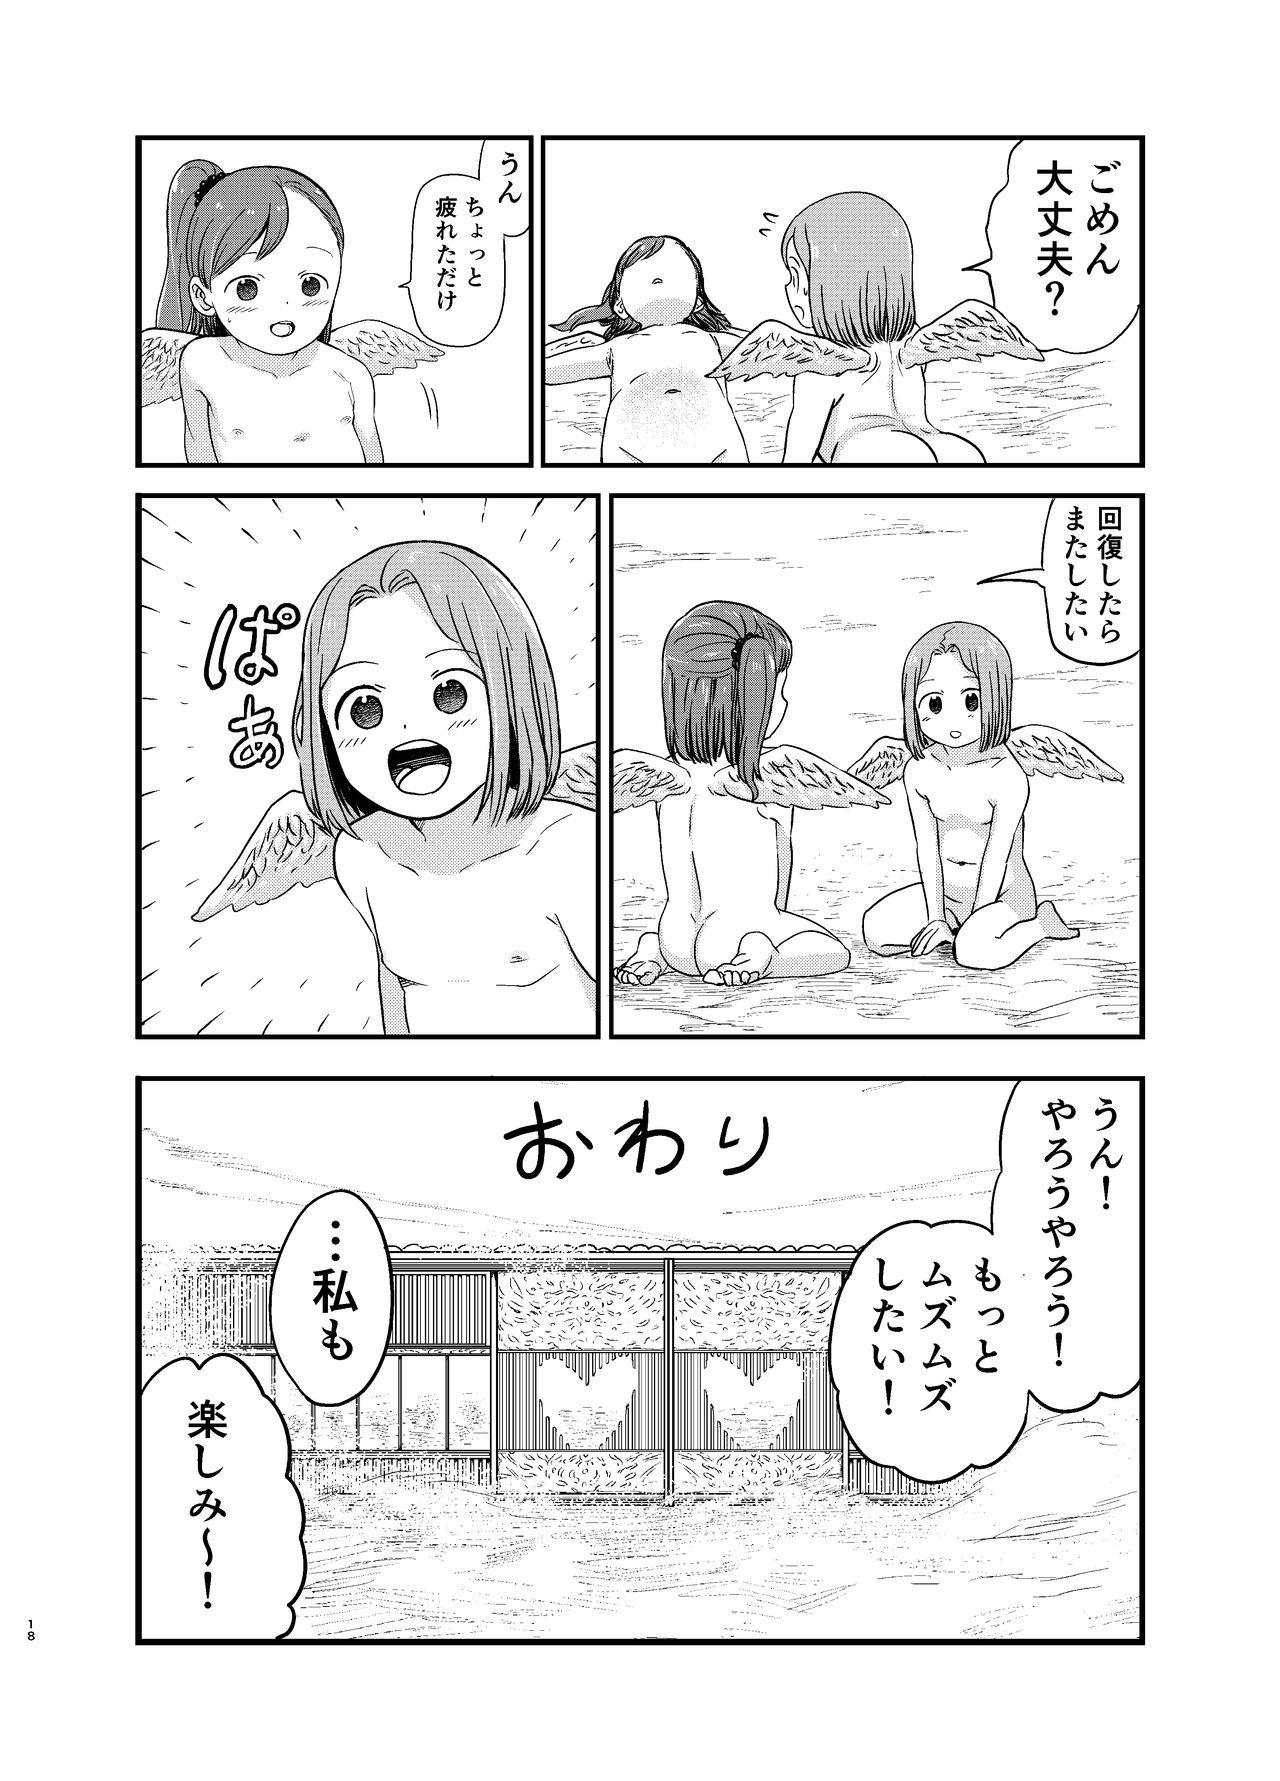 Ass Licking Yuri Tenshi no Futari ga Ecchi na Koto o Suru Manga - Original Pretty - Page 18